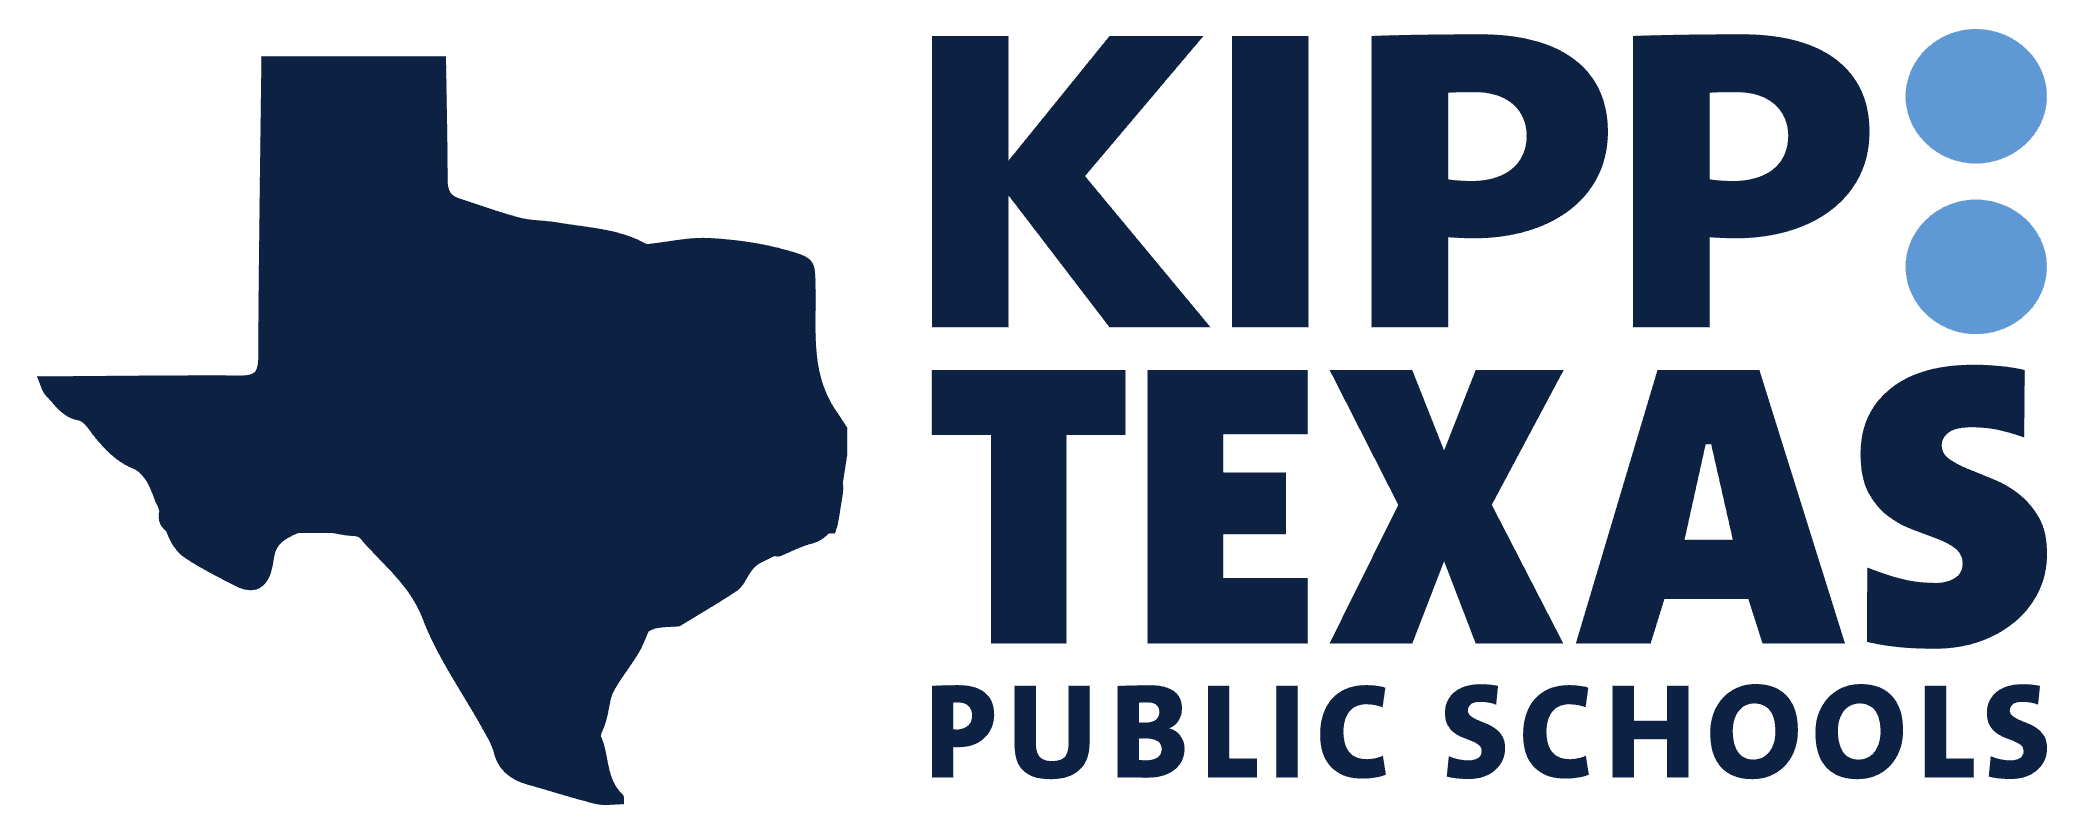 KIPP Texas Public Schools - Houston